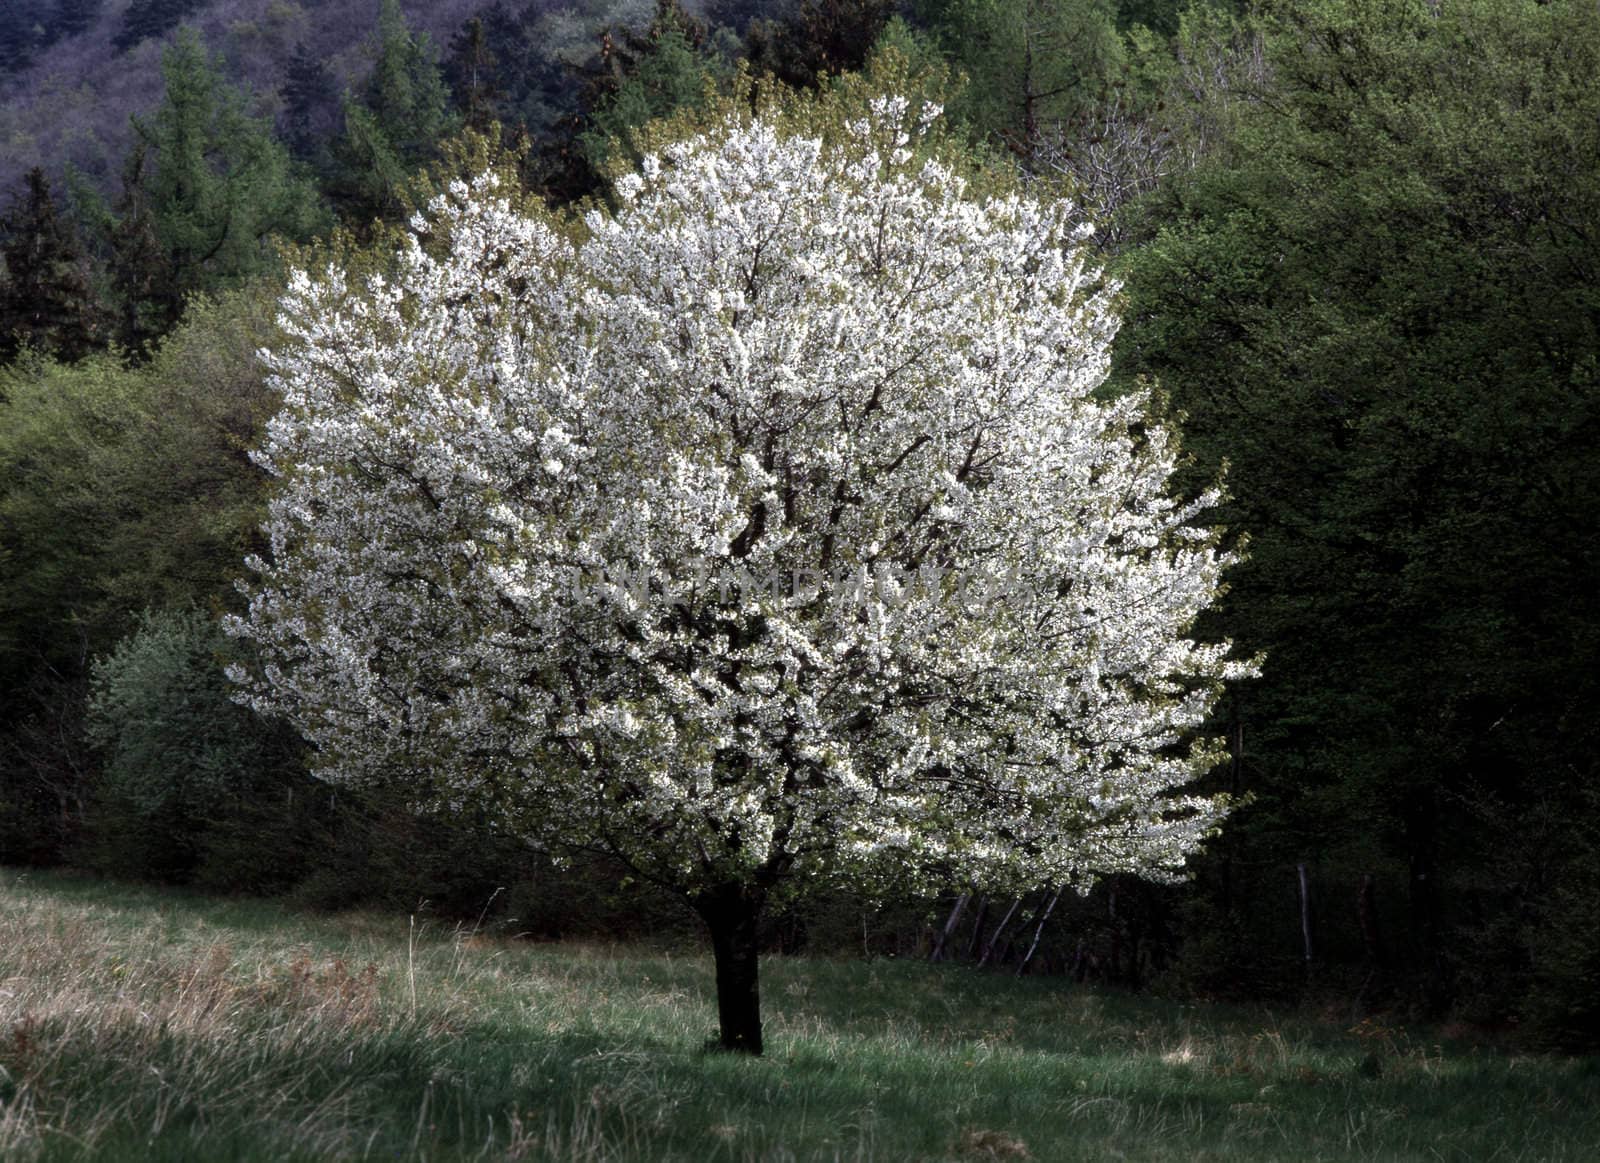 Tree blooming  in spring